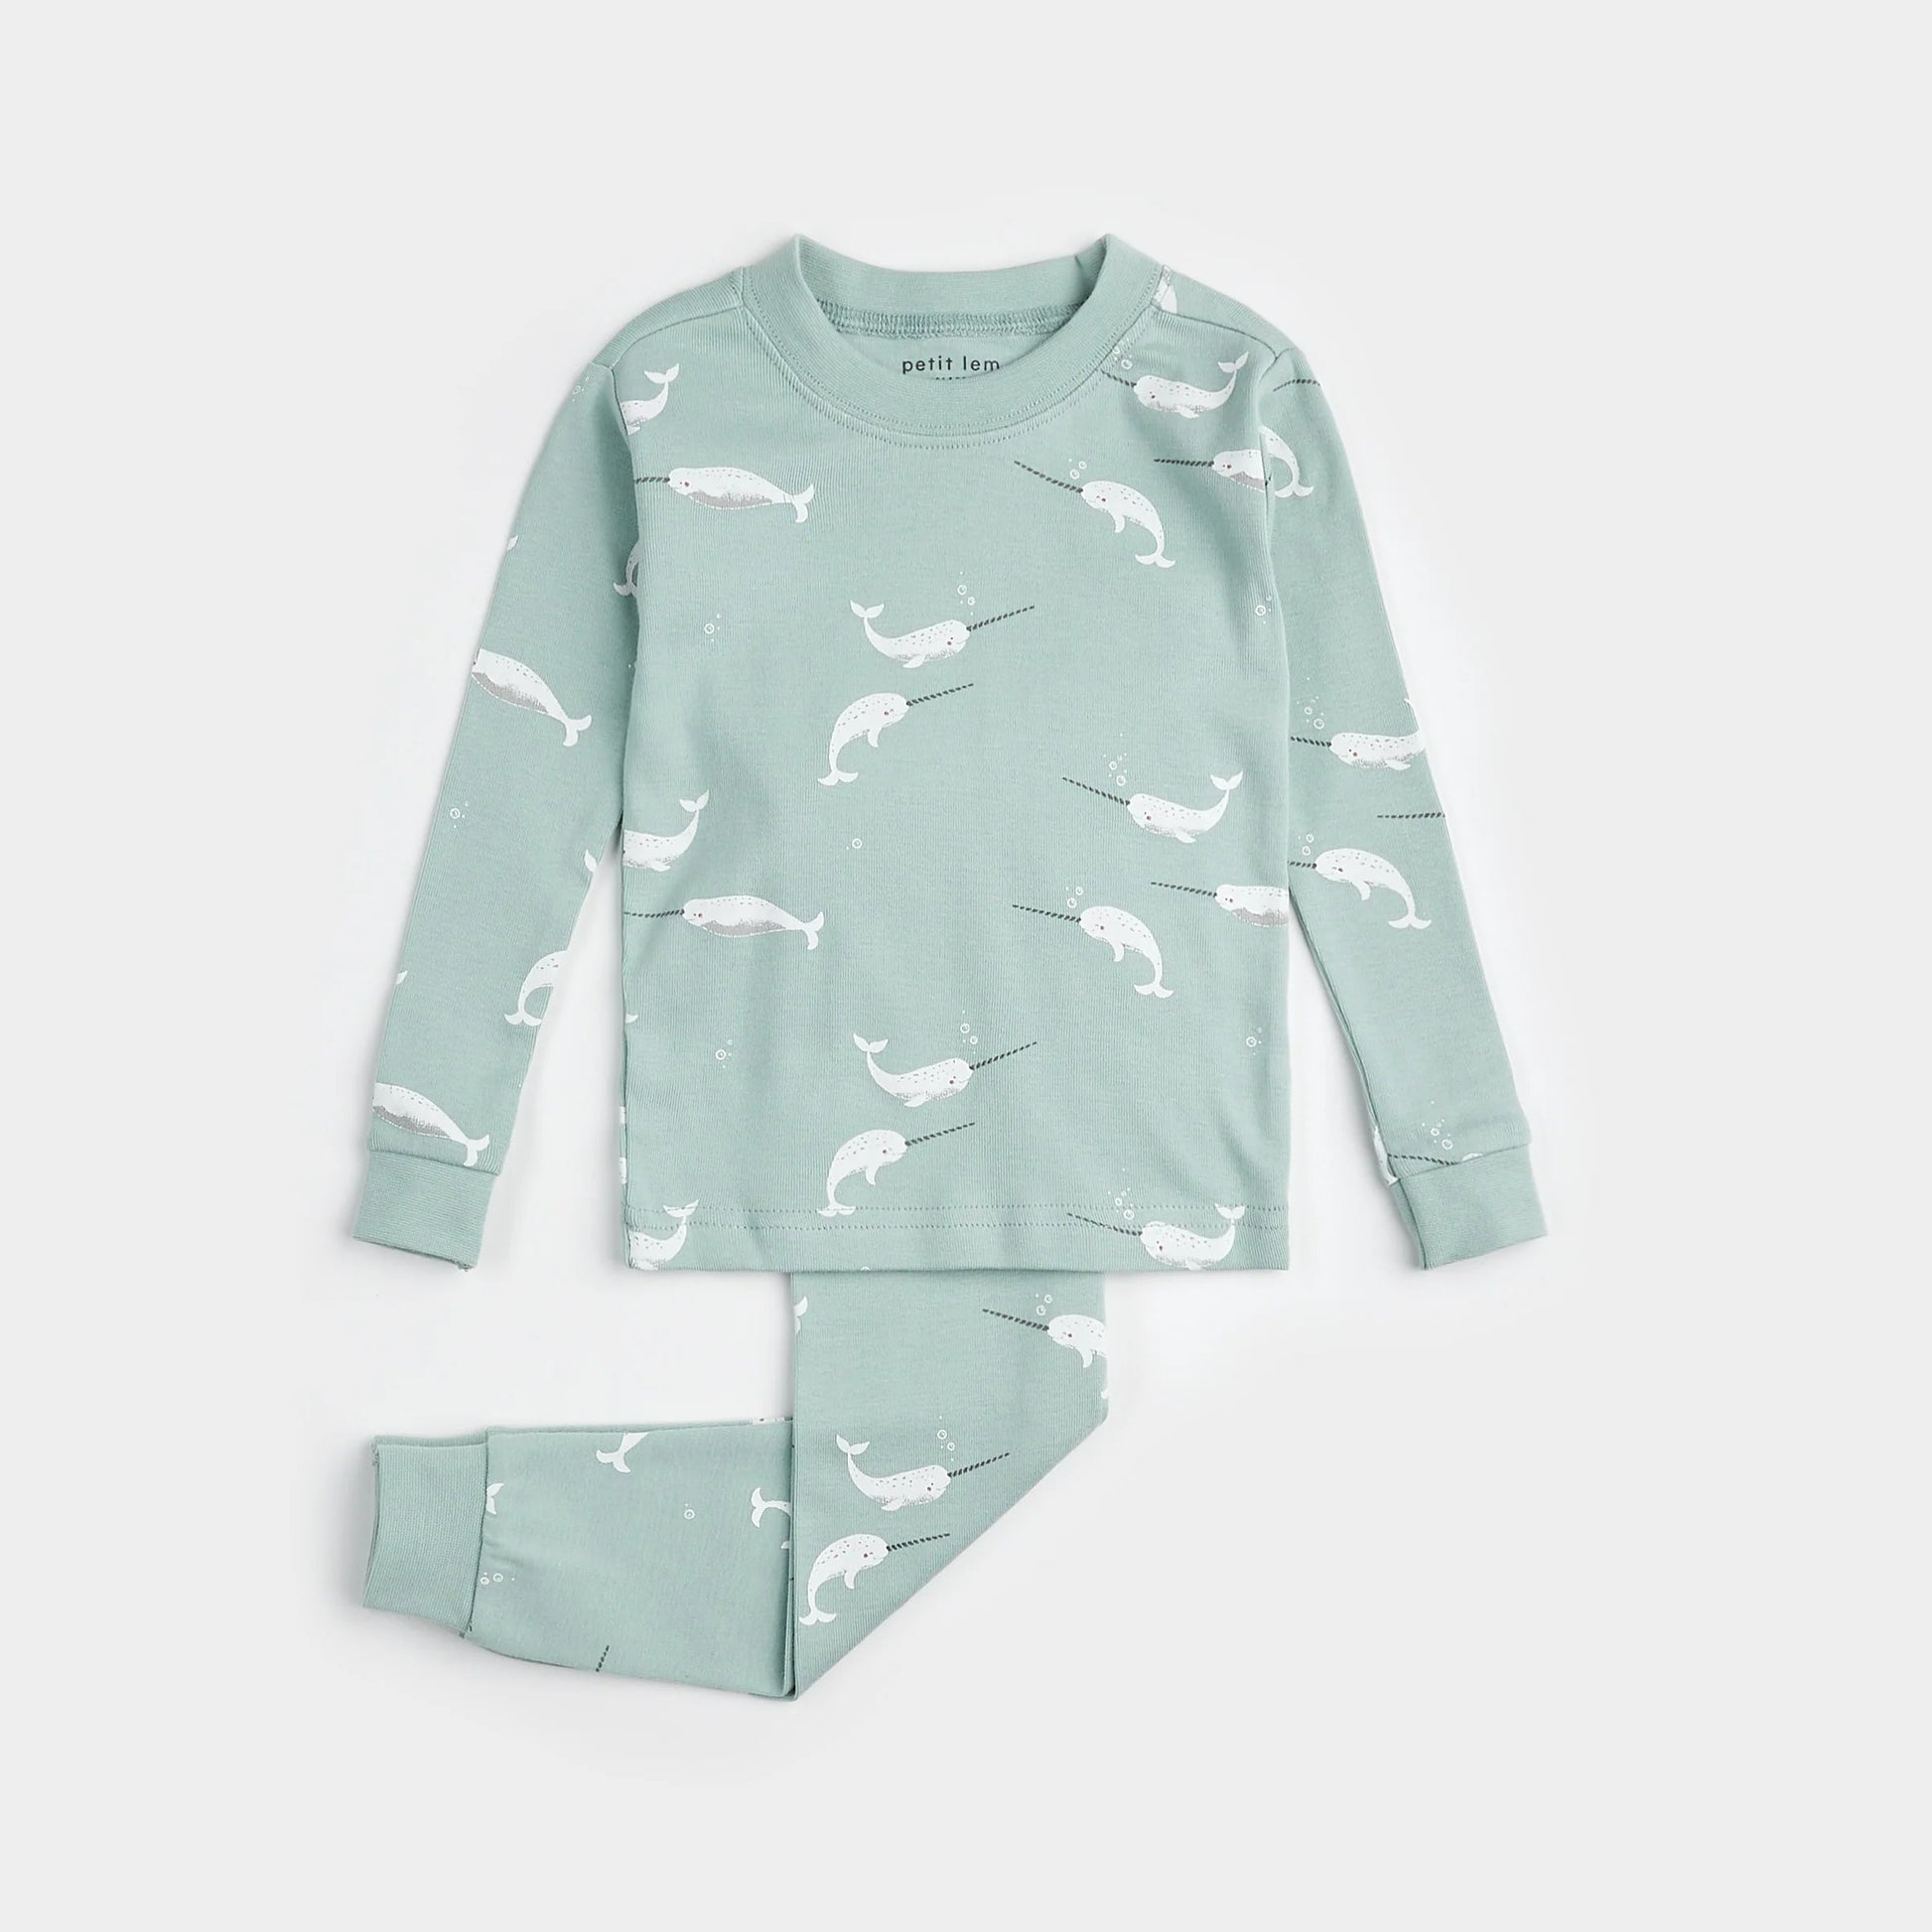 Pyjama deux pièces vert avec imprimés de licorne des mers - Petit Lem - Boutique friperie le placard de Jeanne et cie